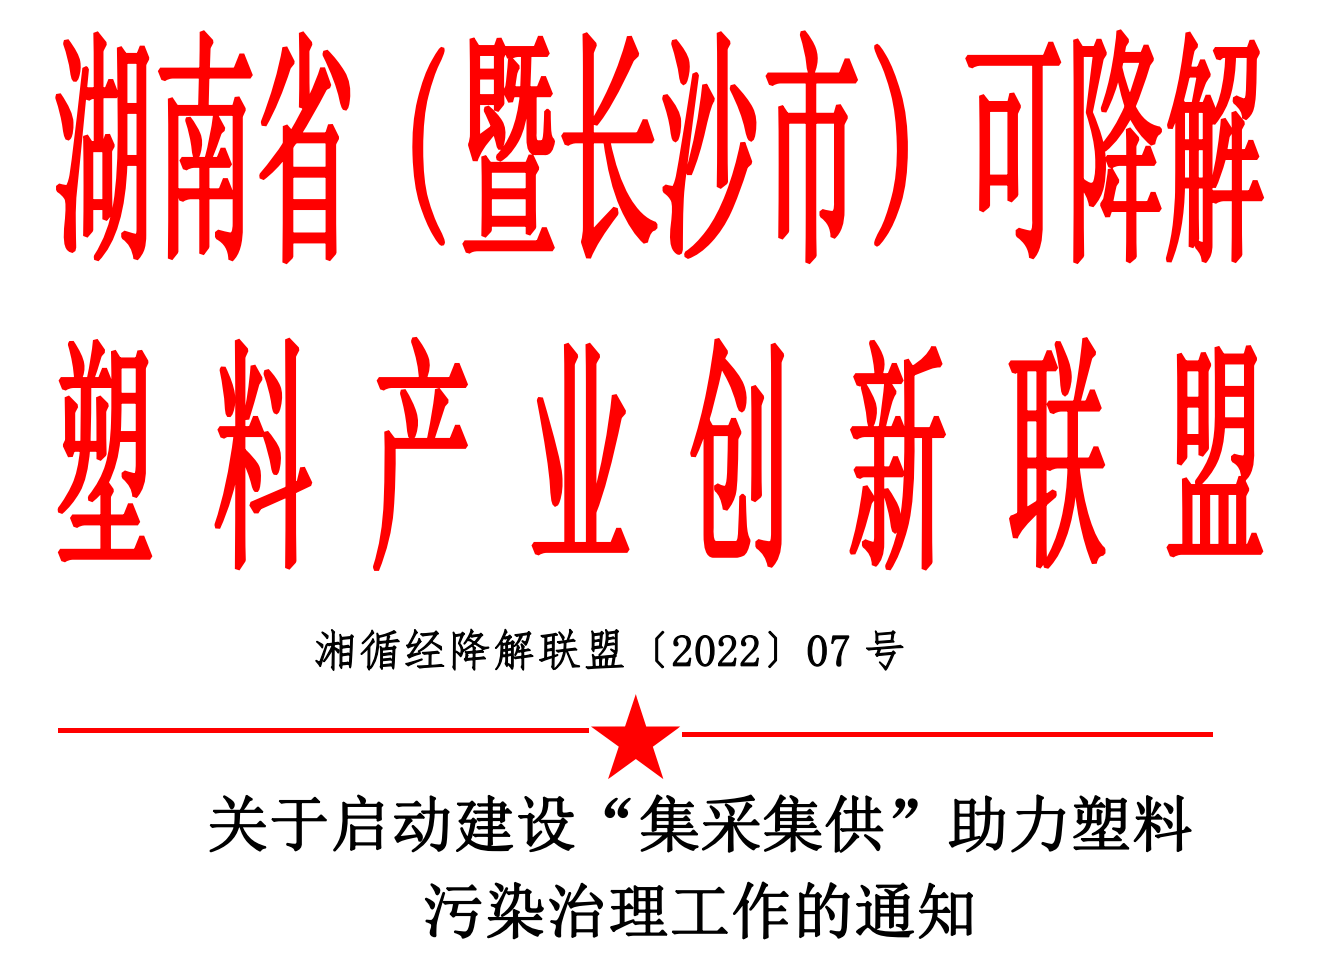 湖南省可降解塑料产业创新联盟湘循经降解联盟〔2022〕07 号通知。